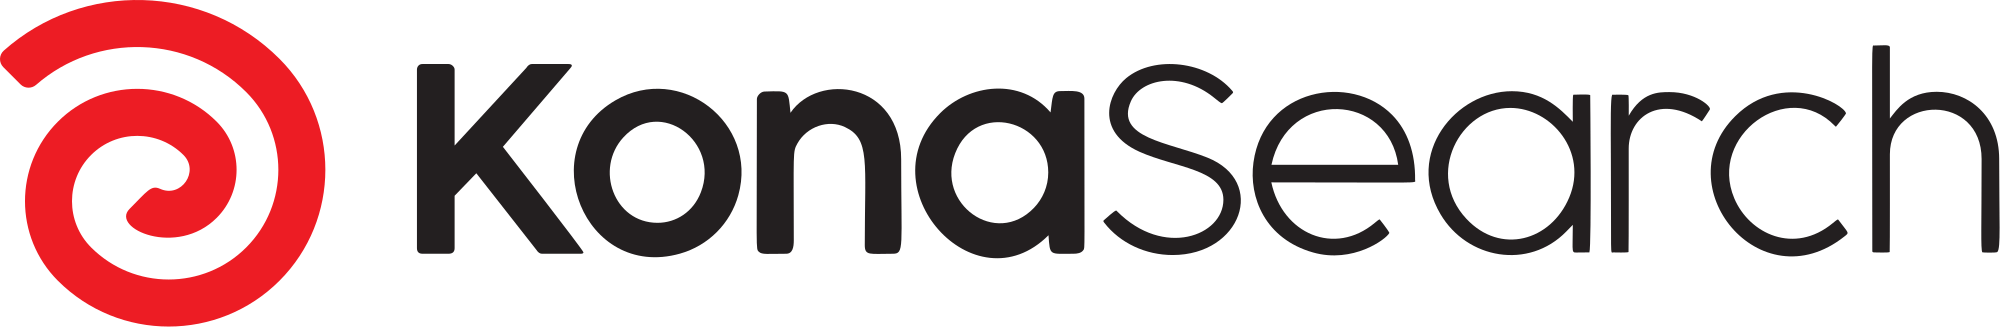 KonaSearch logo (SVG)